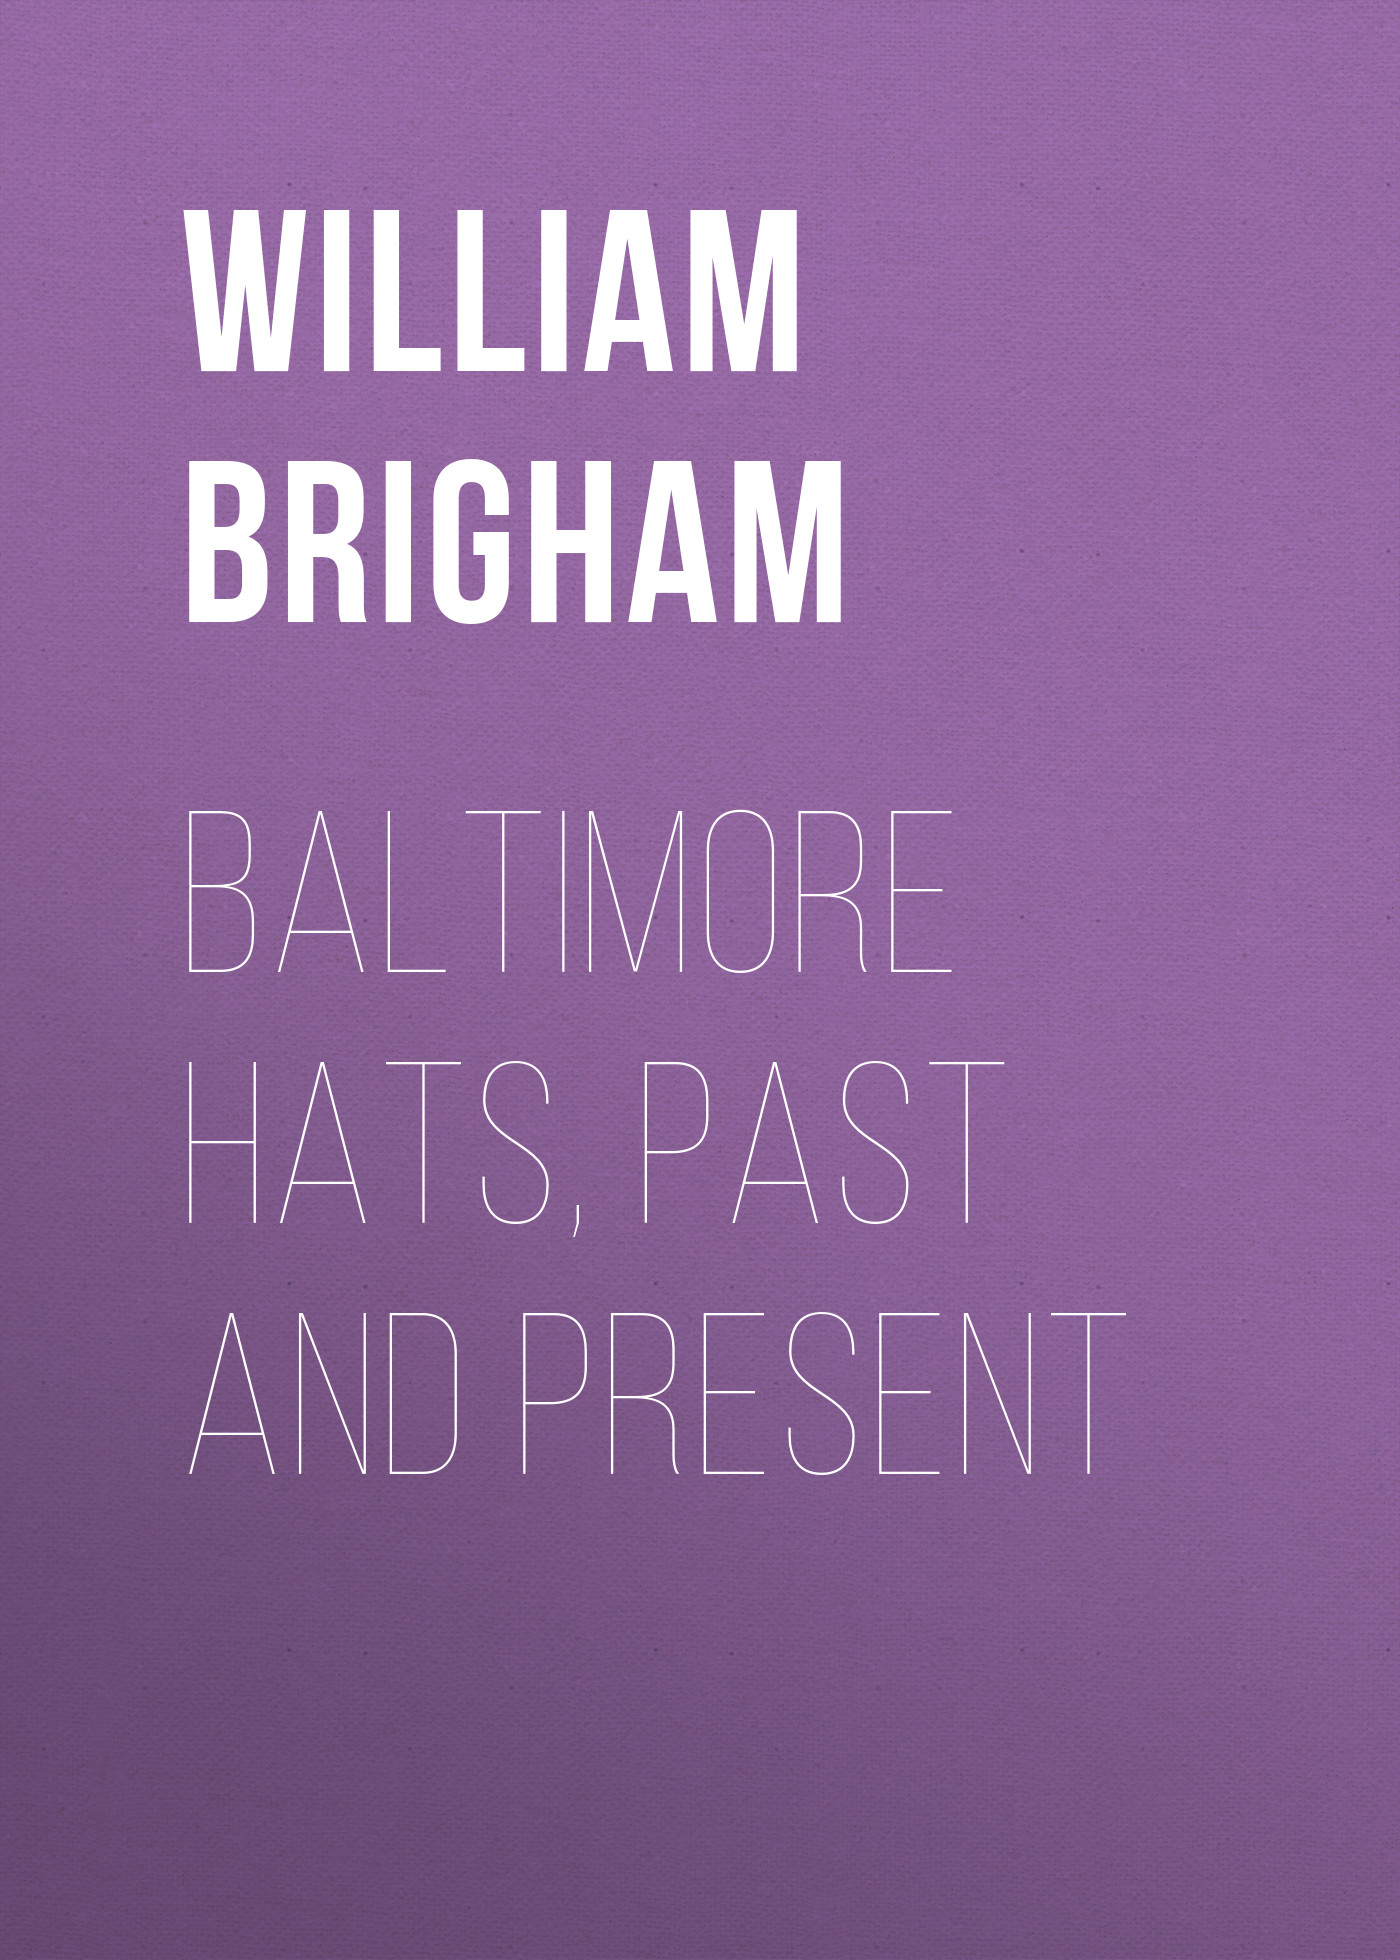 Книга Baltimore Hats, Past and Present из серии , созданная William Brigham, может относится к жанру Зарубежная старинная литература, Зарубежная классика. Стоимость электронной книги Baltimore Hats, Past and Present с идентификатором 24180092 составляет 0.90 руб.